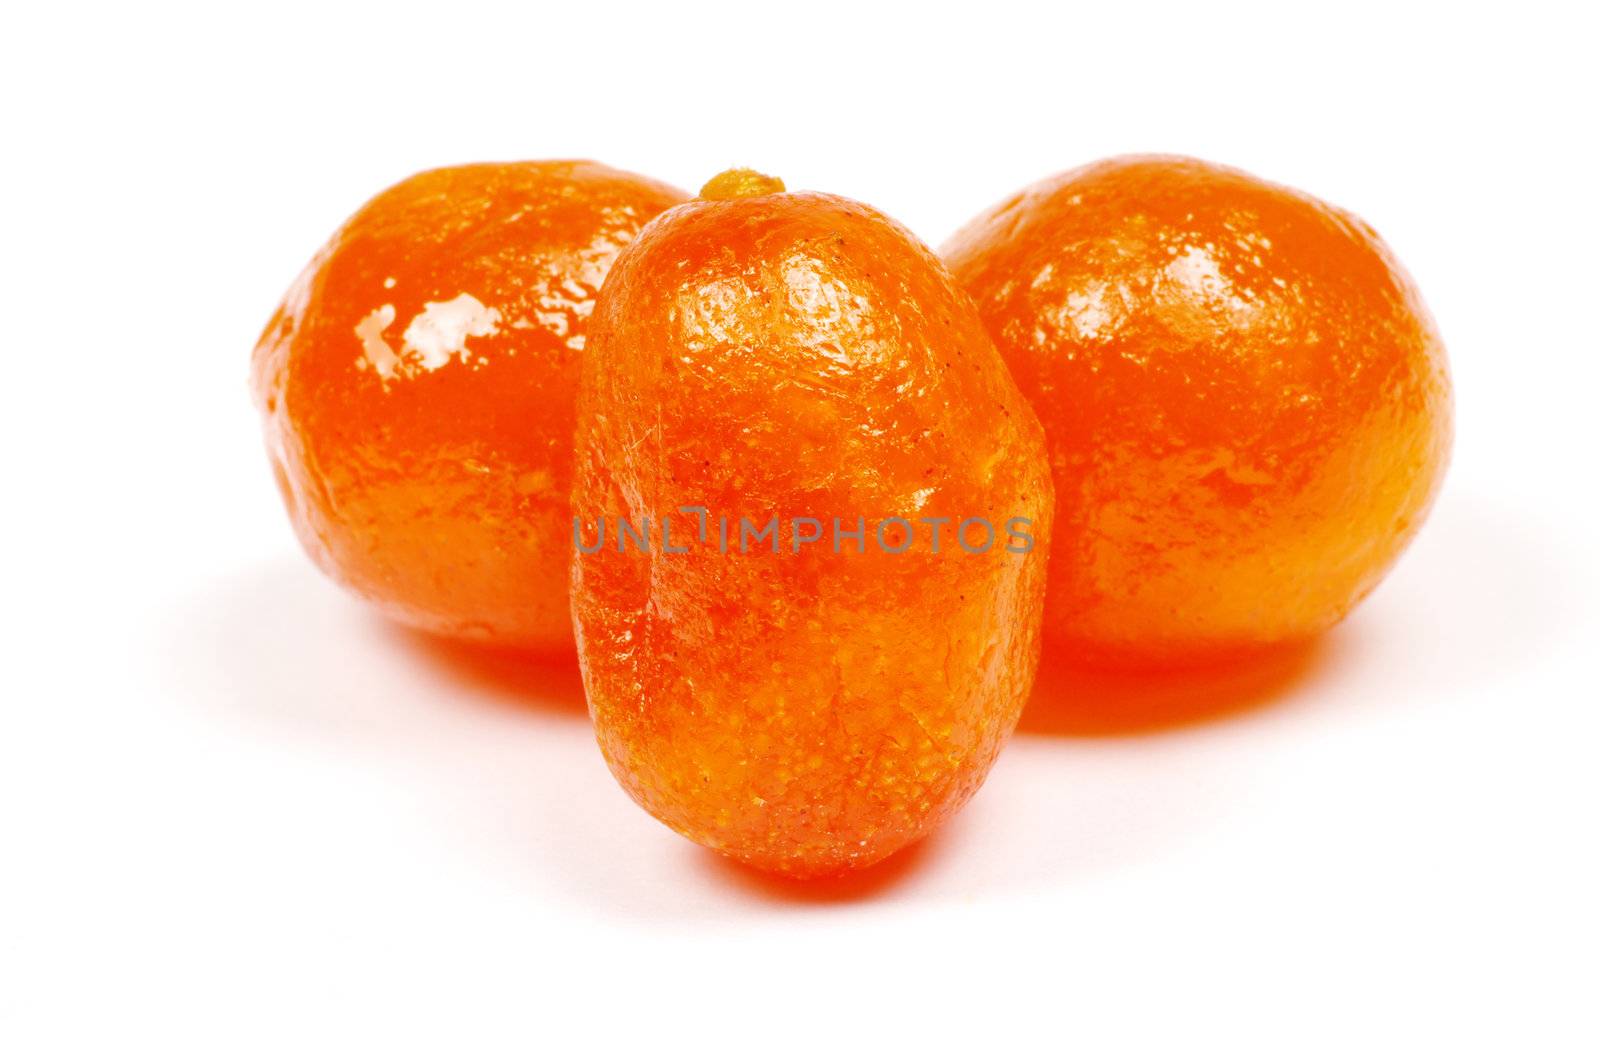 Dried kumquat by Pakhnyushchyy